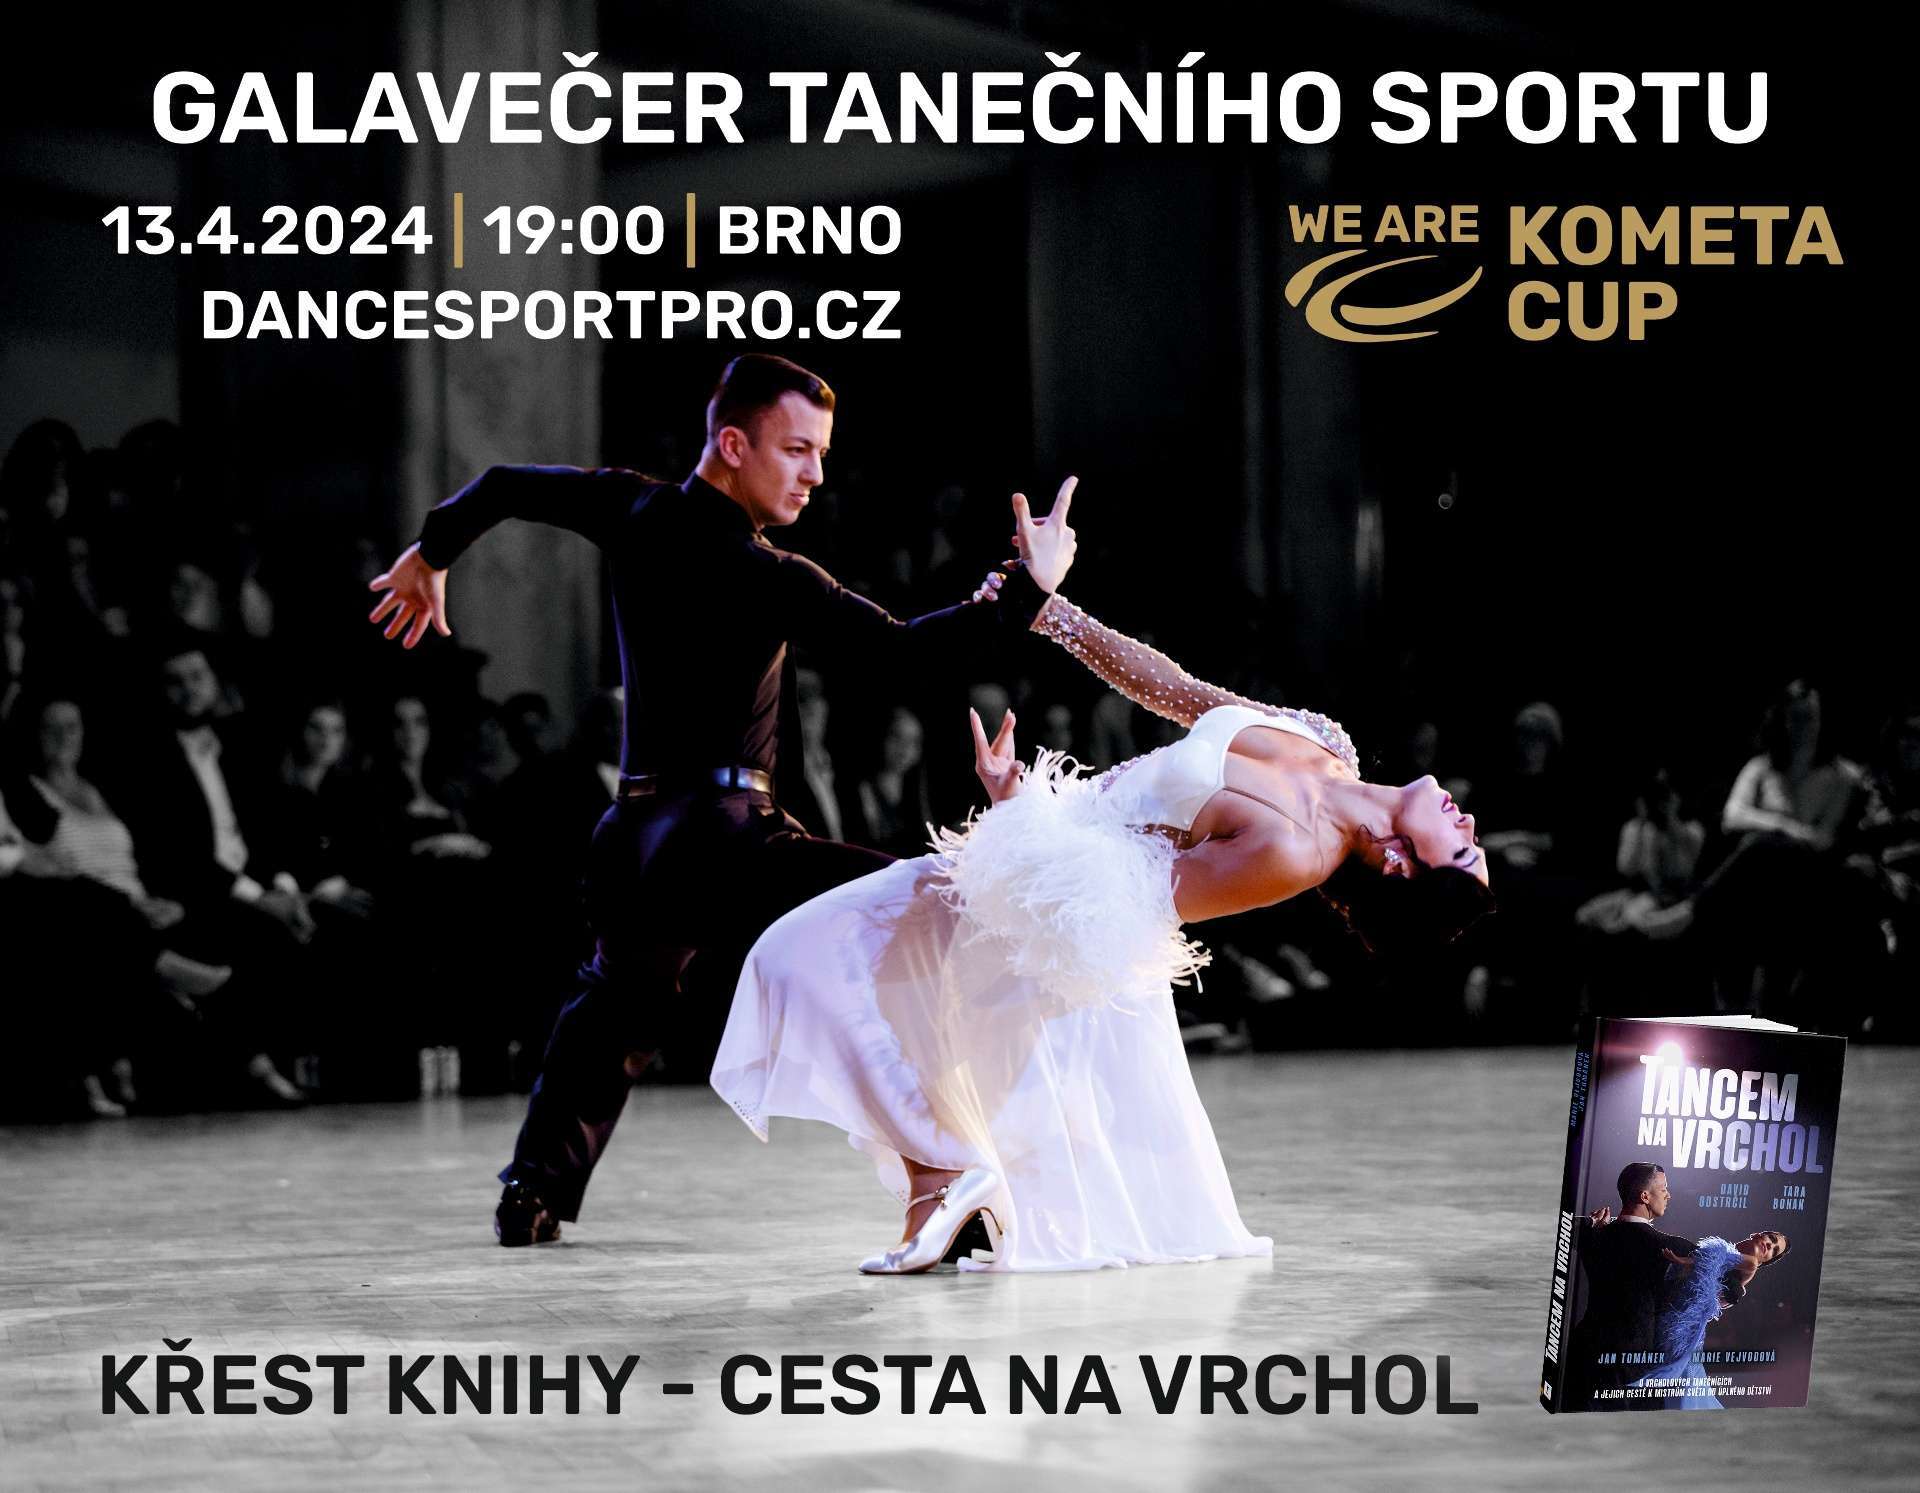 KOMETA CUP 2024 Galavečer tanečního sportu